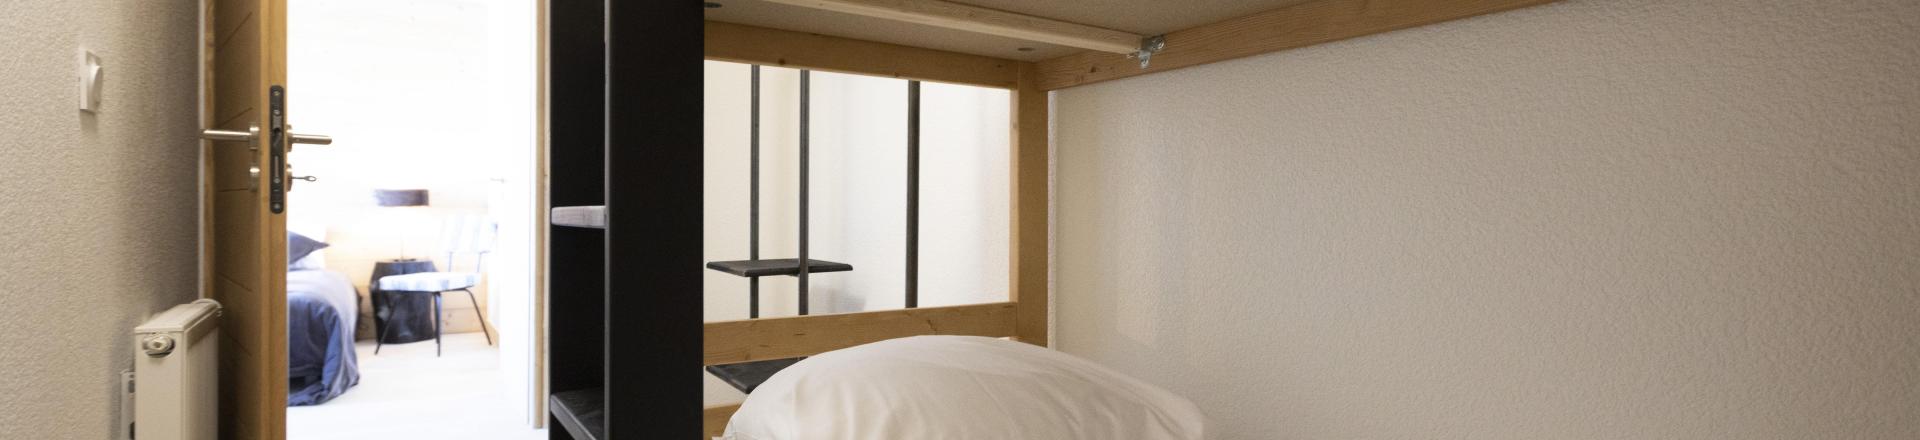 Аренда на лыжном курорте Апартаменты 3 комнат кабин 8 чел. - Résidence Neige et Soleil - Les 2 Alpes - Двухъярусные кровати